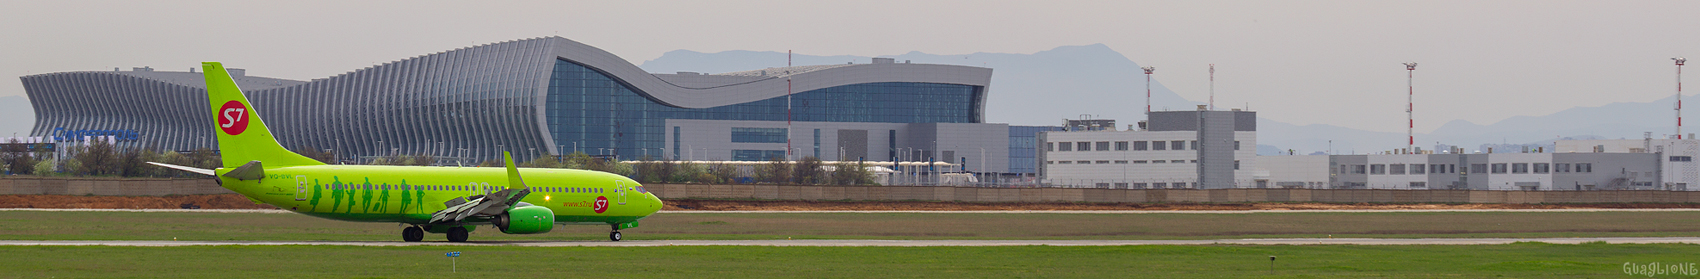 VQ-BVL. Аэропорты России